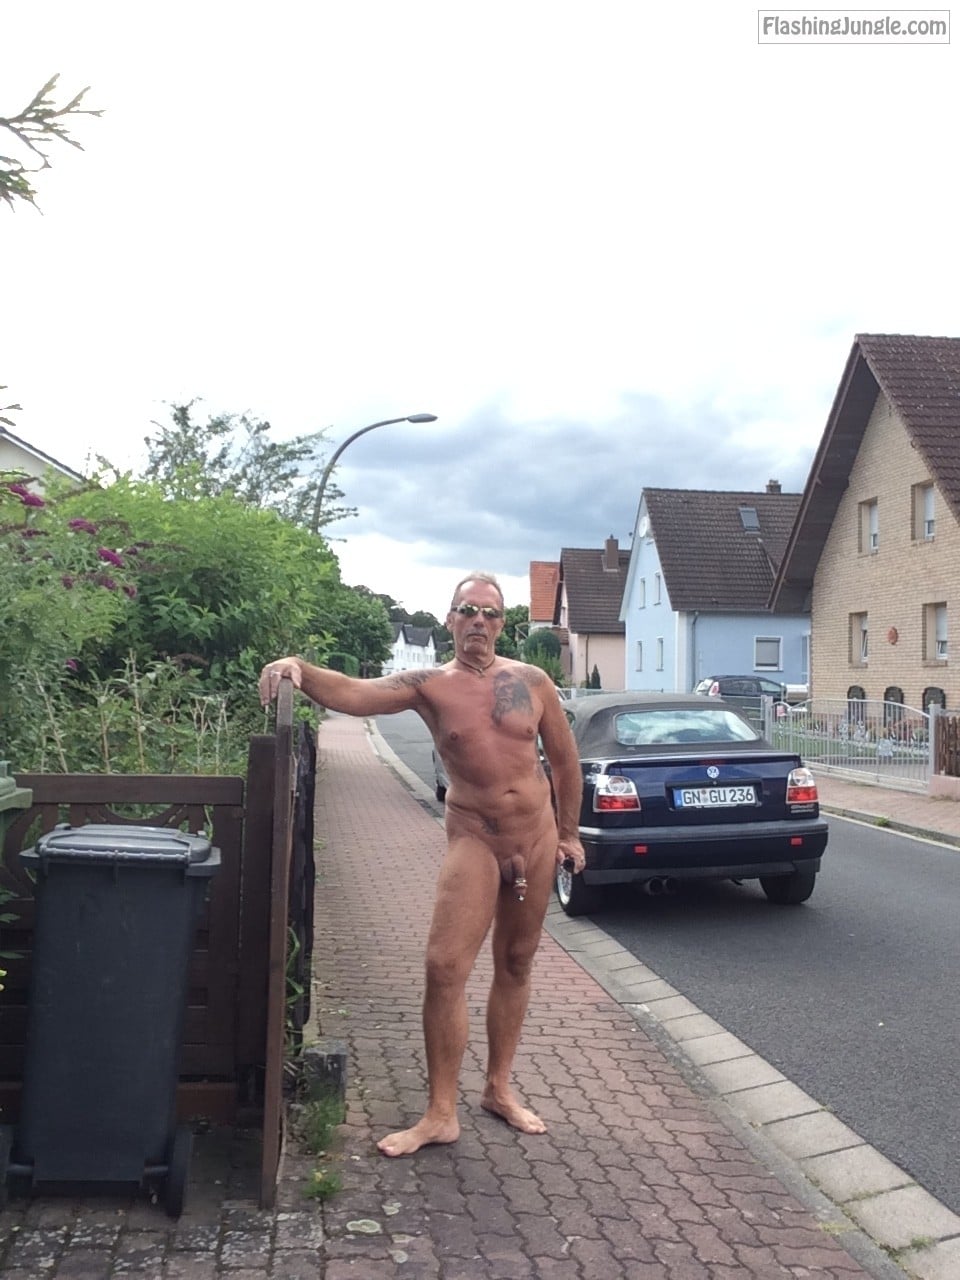 Real Amateurs Public Nudity Pics Dick Flash Pics